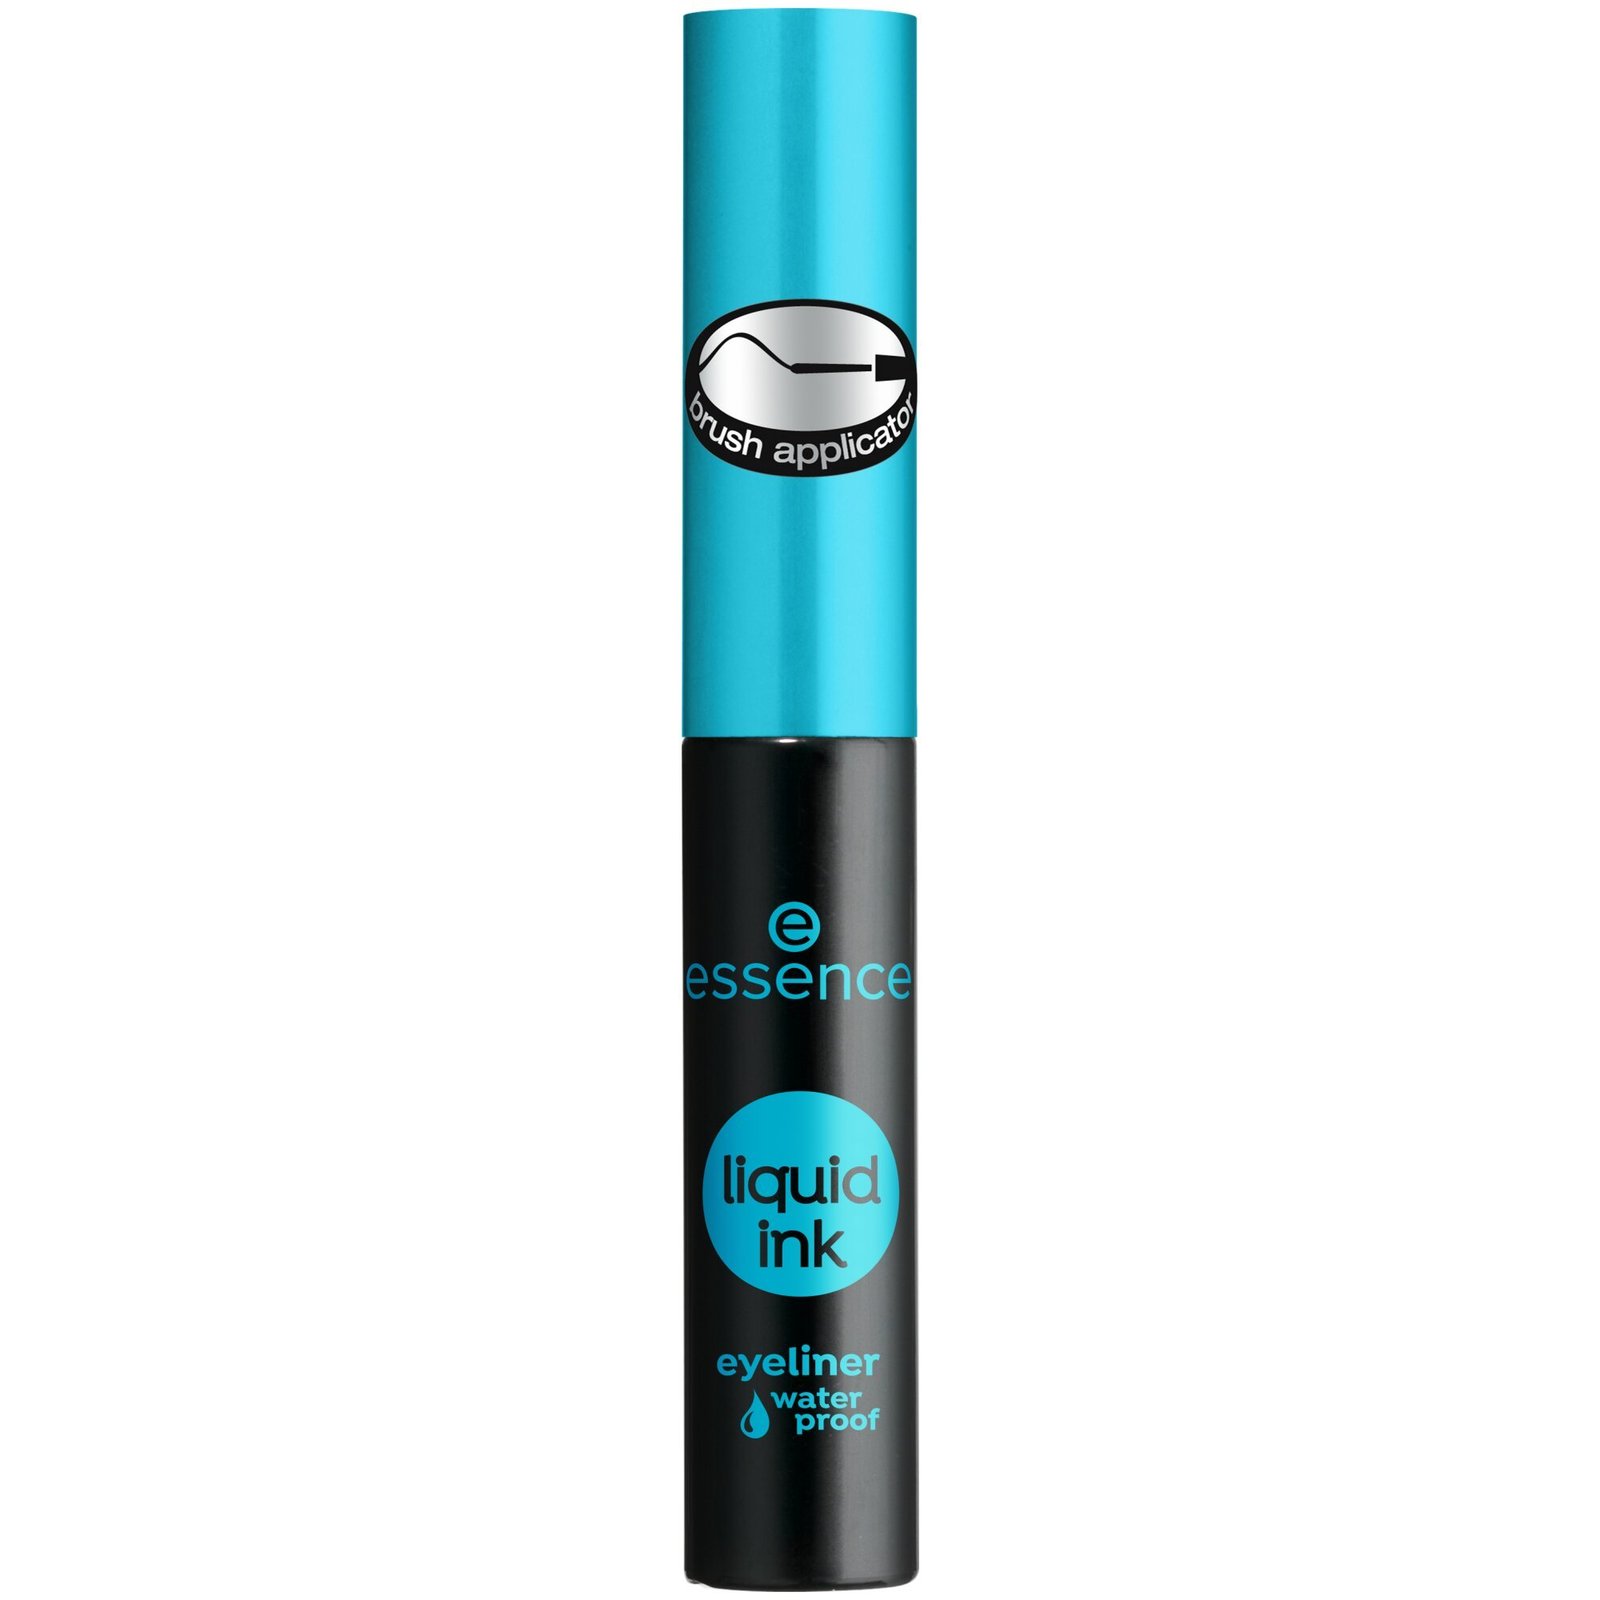 essence Liquid Ink Eyeliner Waterproof 3 ml